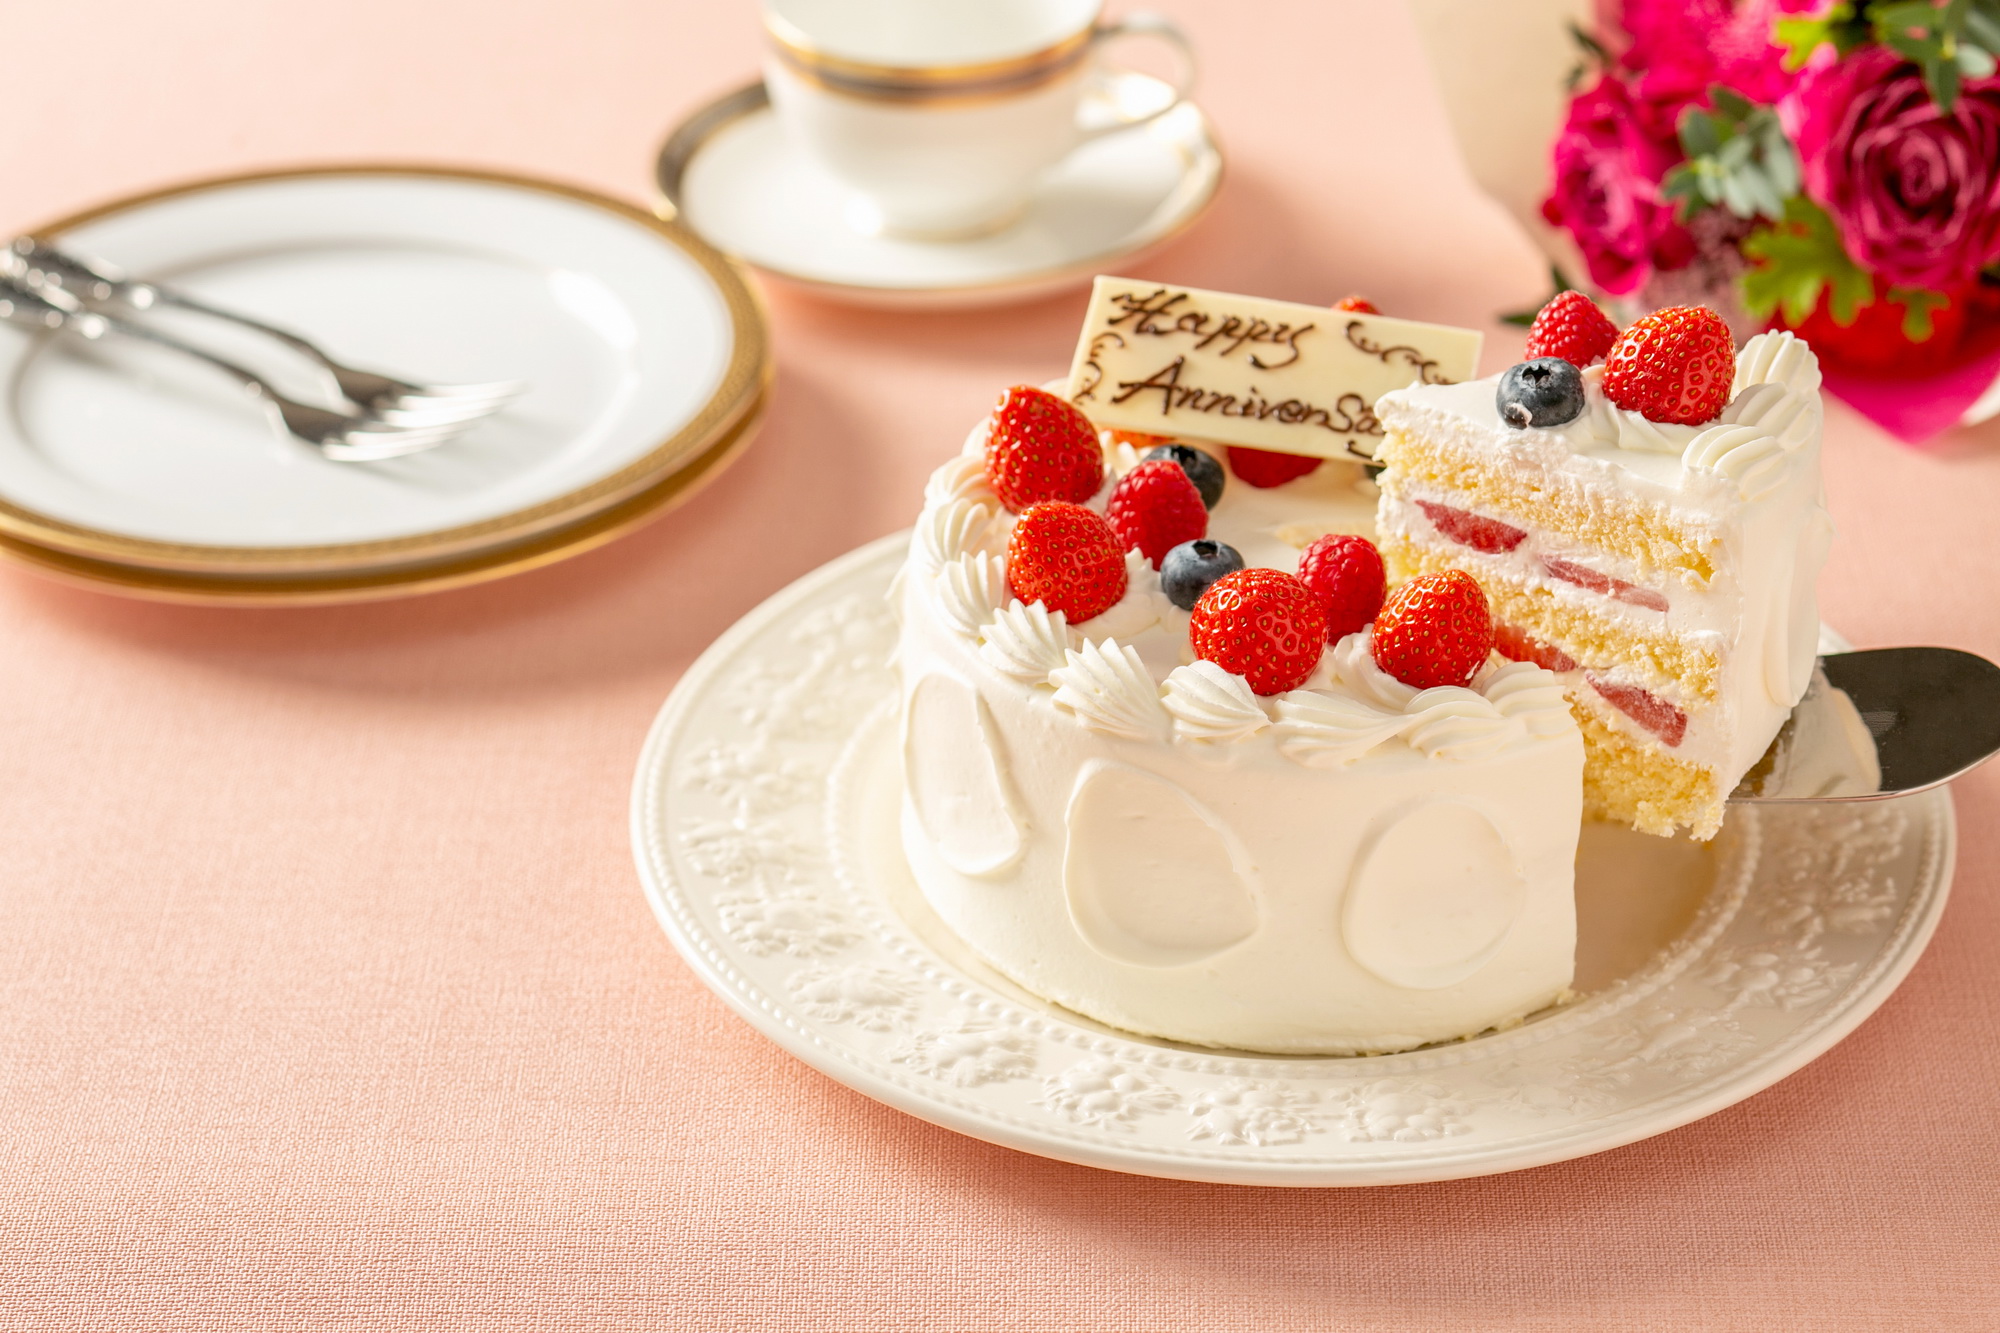 川崎日航ホテル 誕生日や記念日 にホテルメイドのケーキでお祝い 9種類のアニバーサリーケーキ を販売 ニッコー ホテルズ インターナショナルのプレスリリース